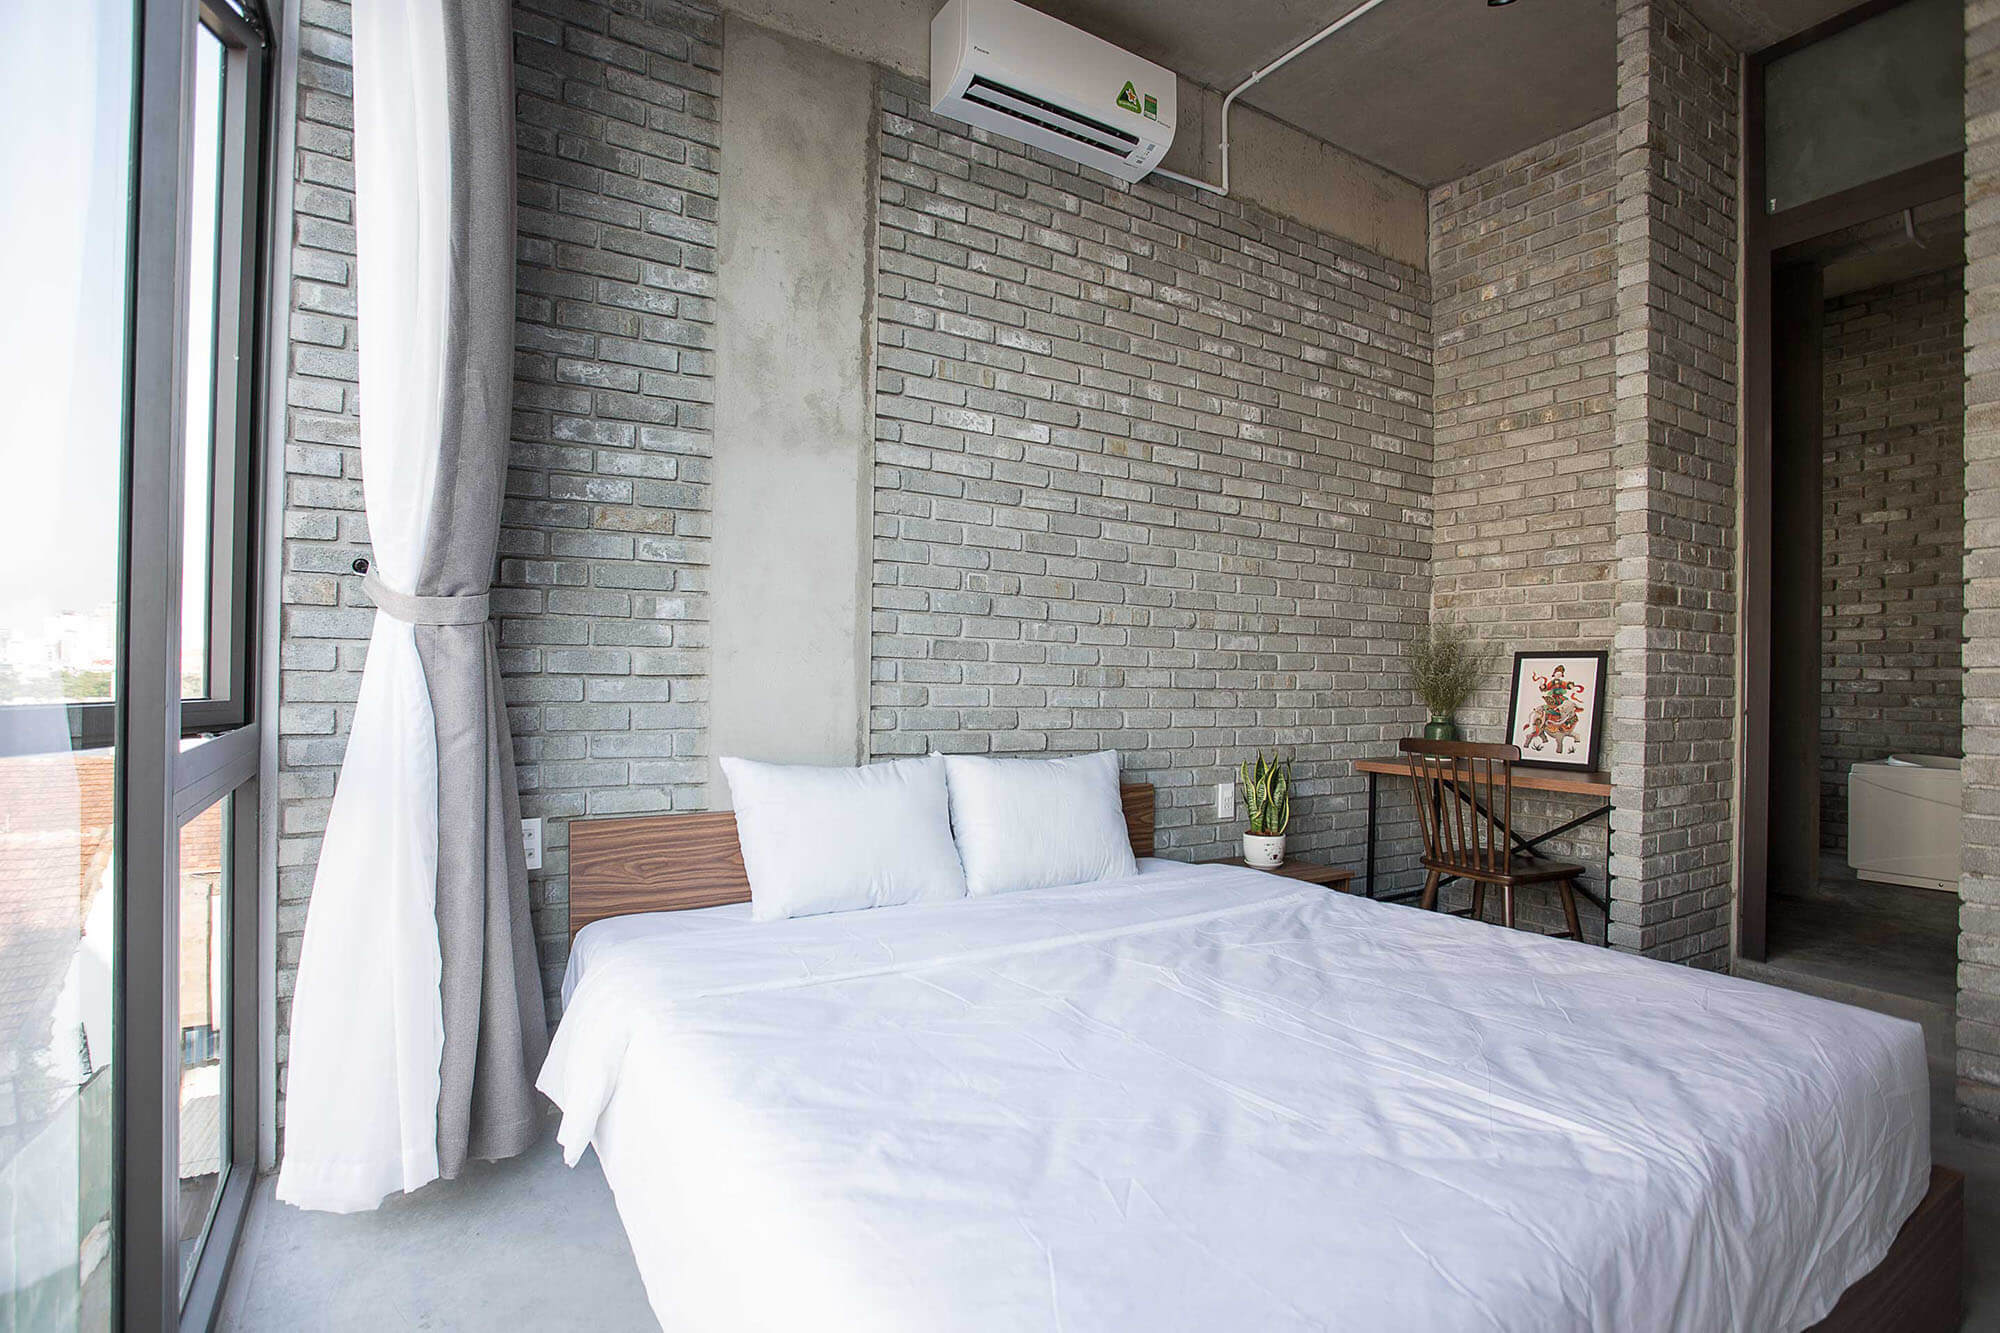 Two Bedroom Apartment The Vietnam Hostel 22 24 26 Hung Vuong Danang Fantasticity Com 03 (1)